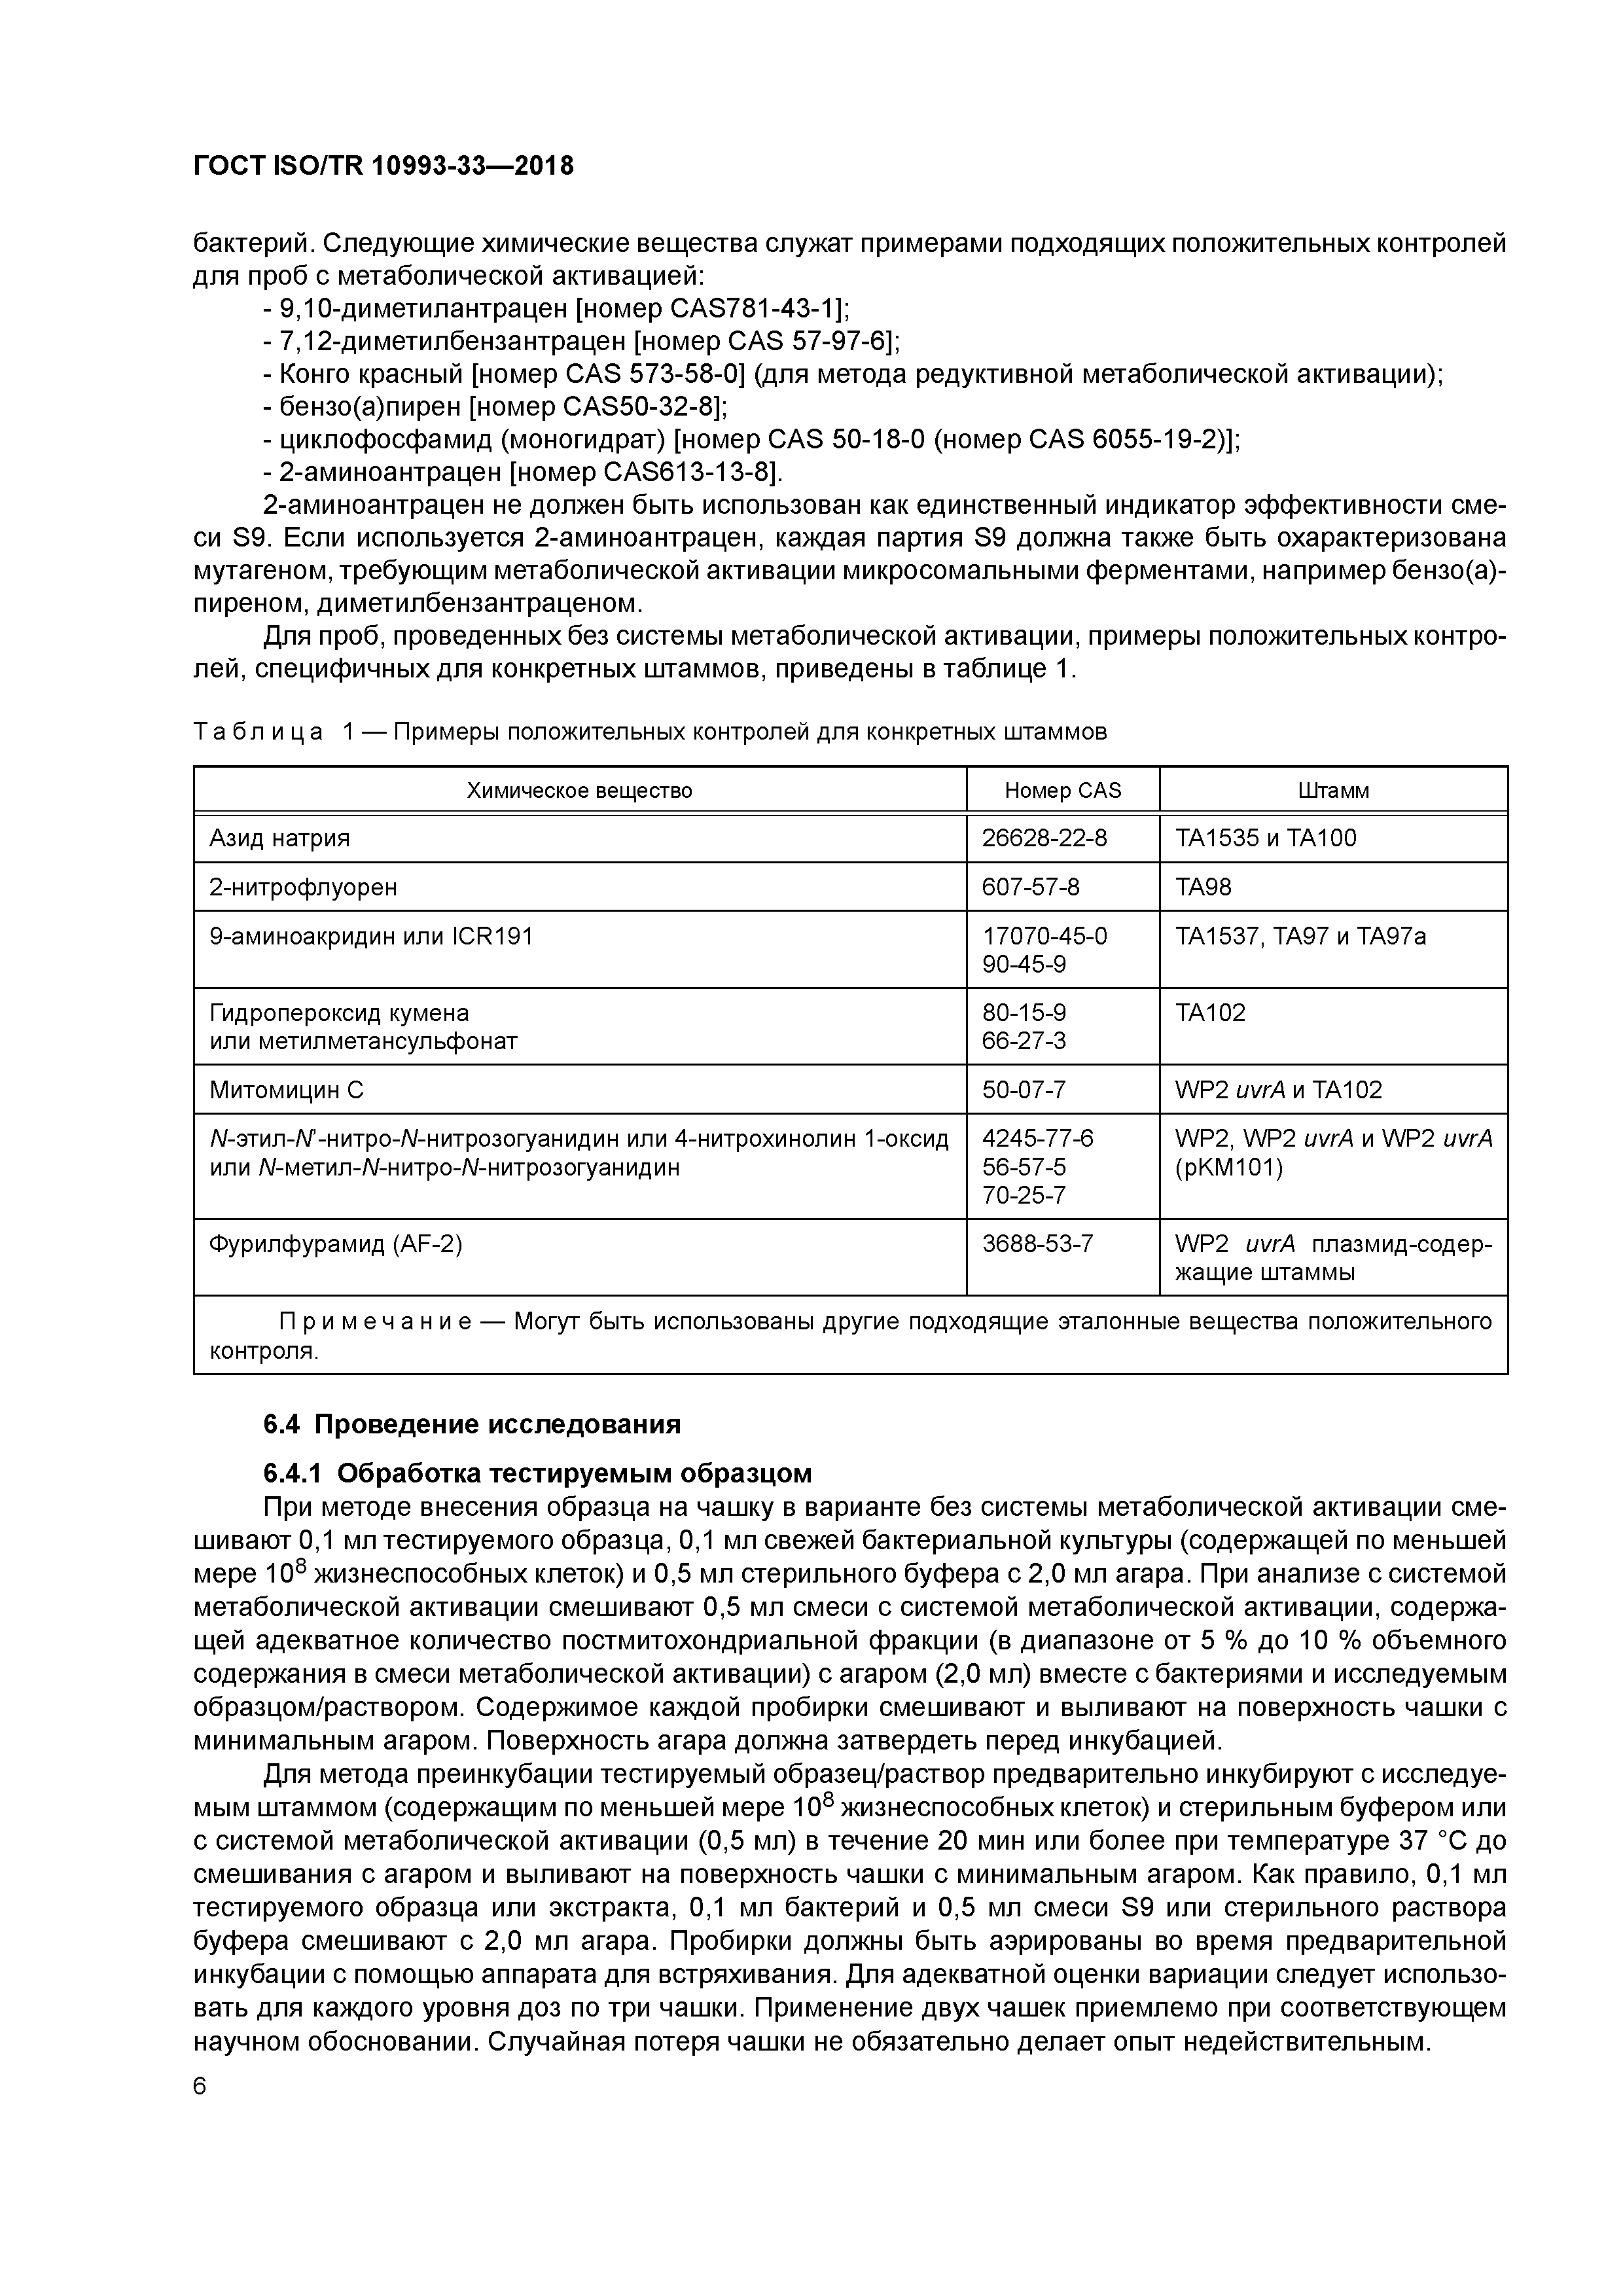 ГОСТ ISO/TR 10993-33-2018